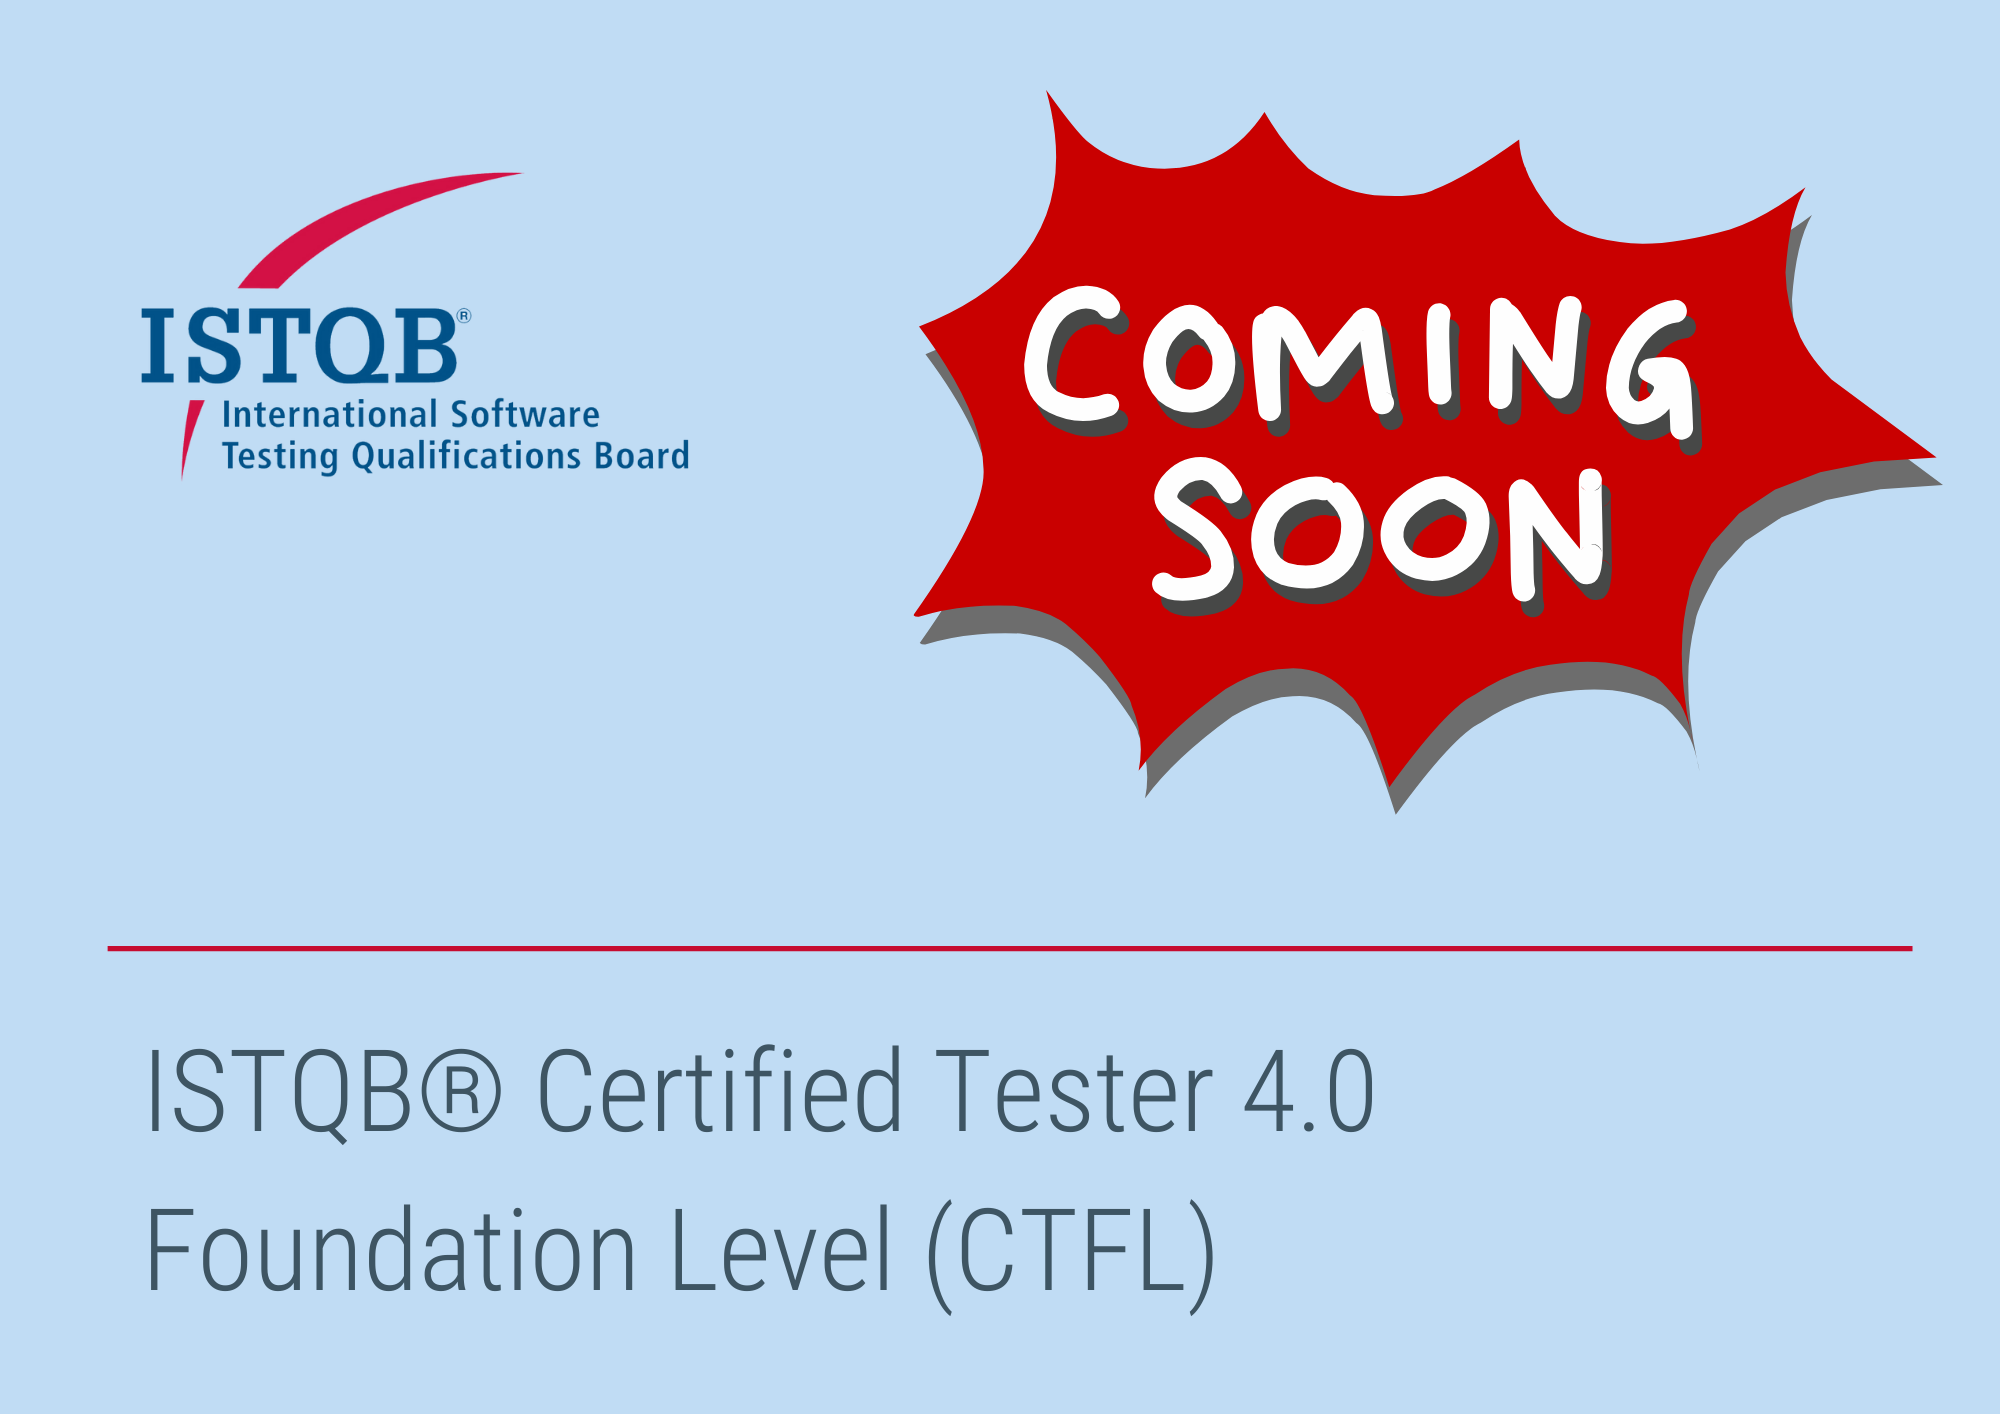 ISTQB CTFL schon bald in der Version 4.0